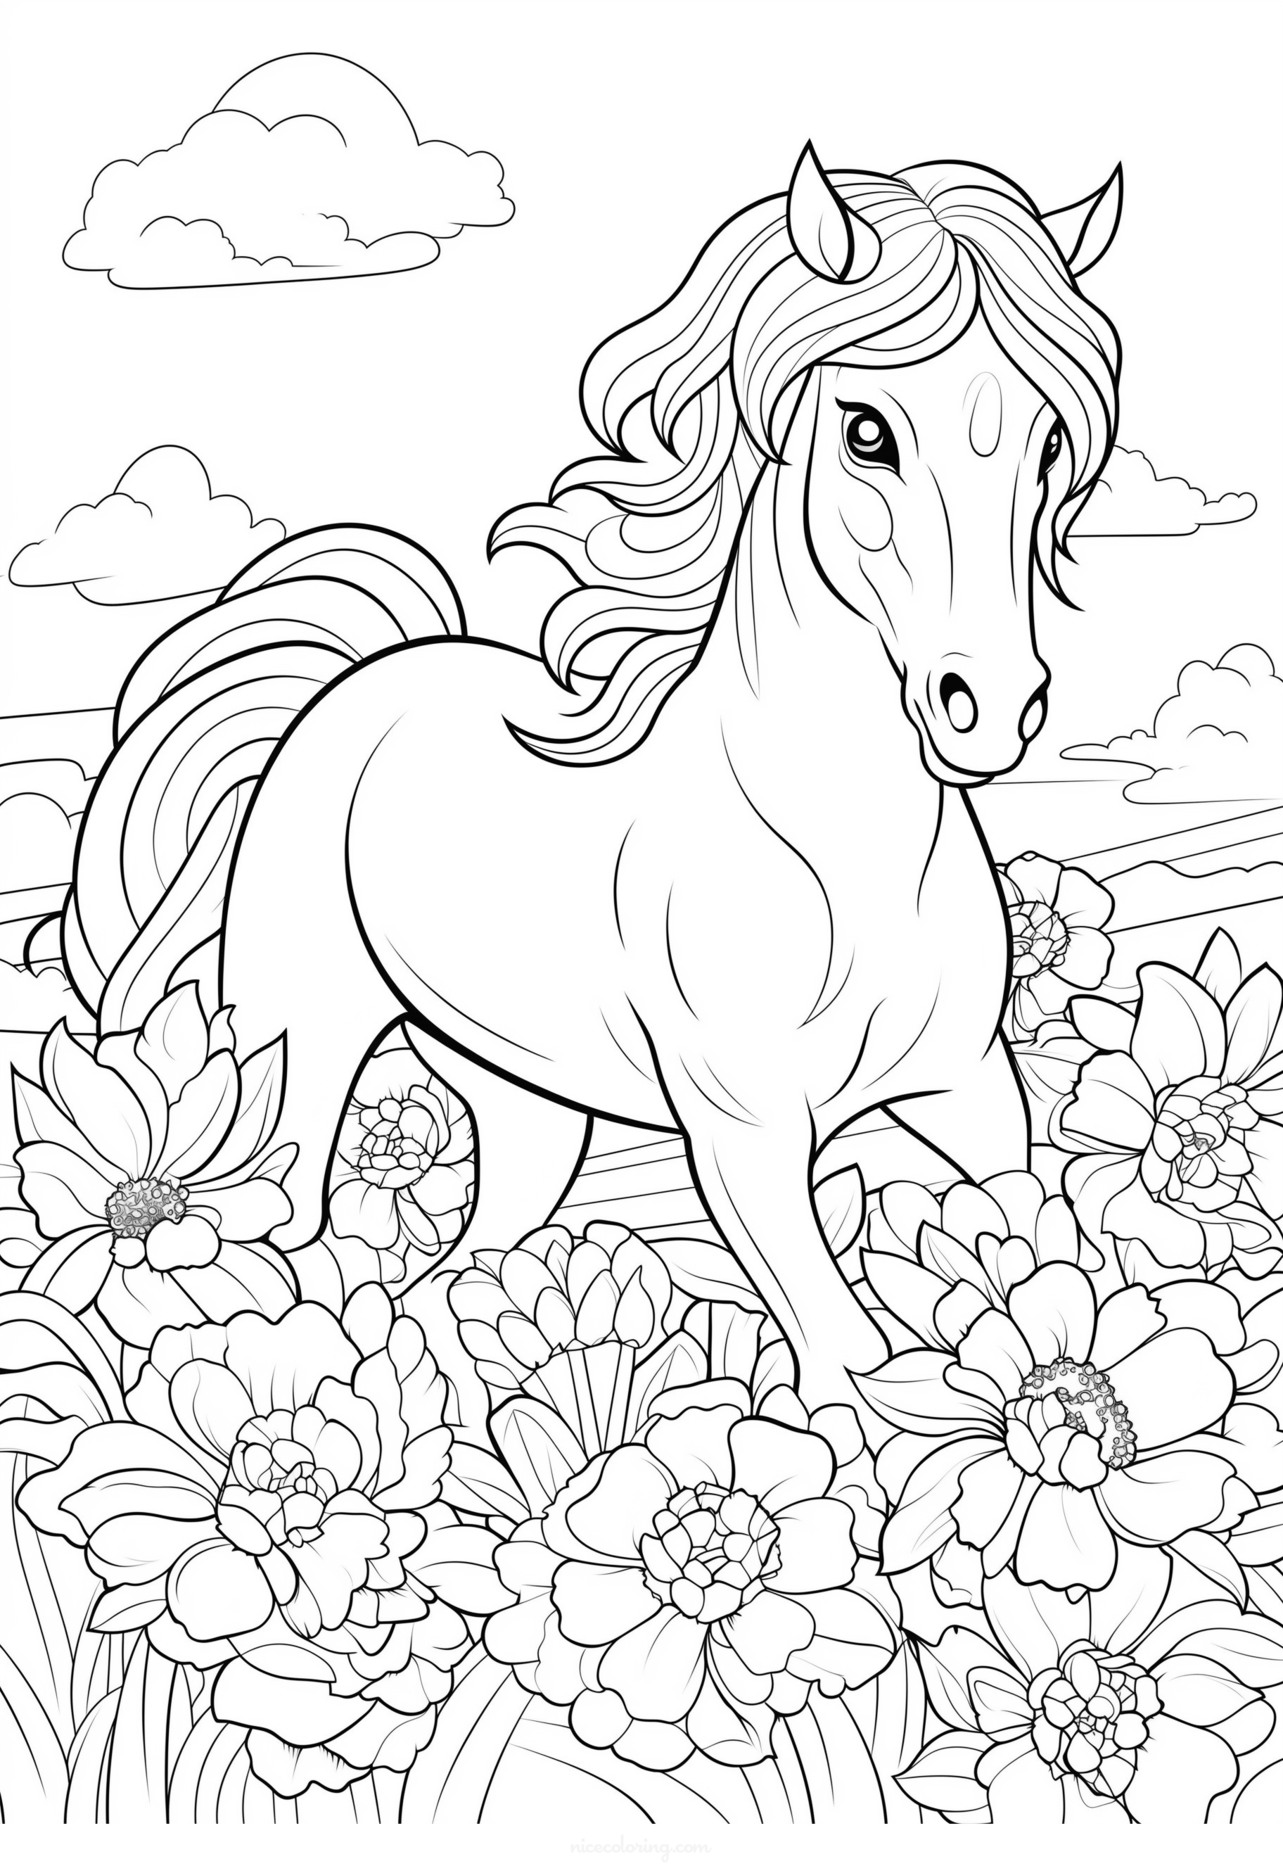 صفحة تلوين تصور حصان يجري في الحقل